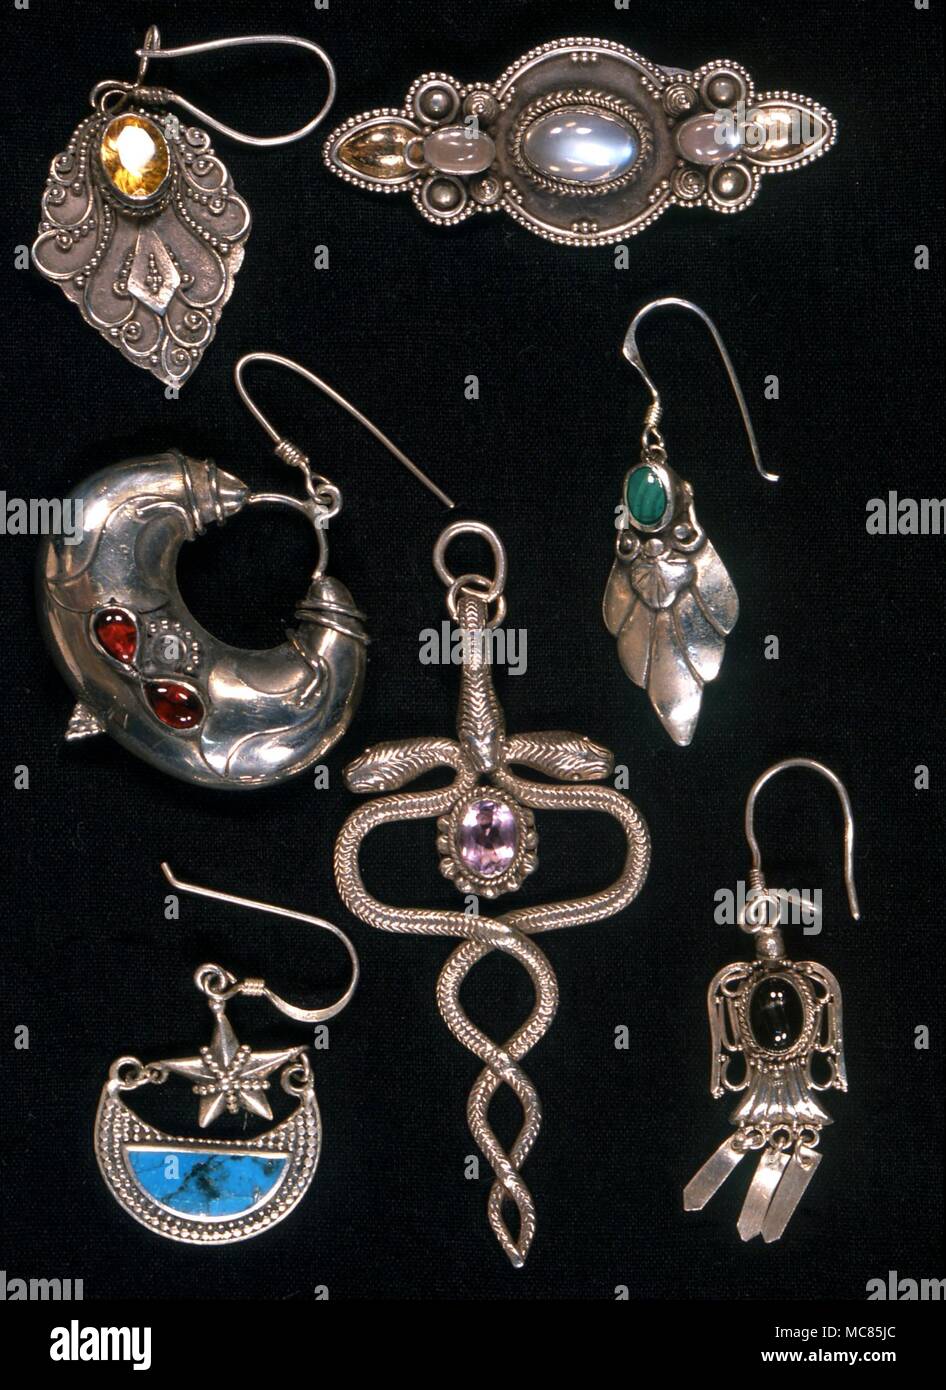 Amuleti. Le sette gemme planetari in orecchini, destinati ad essere indossati per amuletic, nonché fini decorativi. Foto Stock